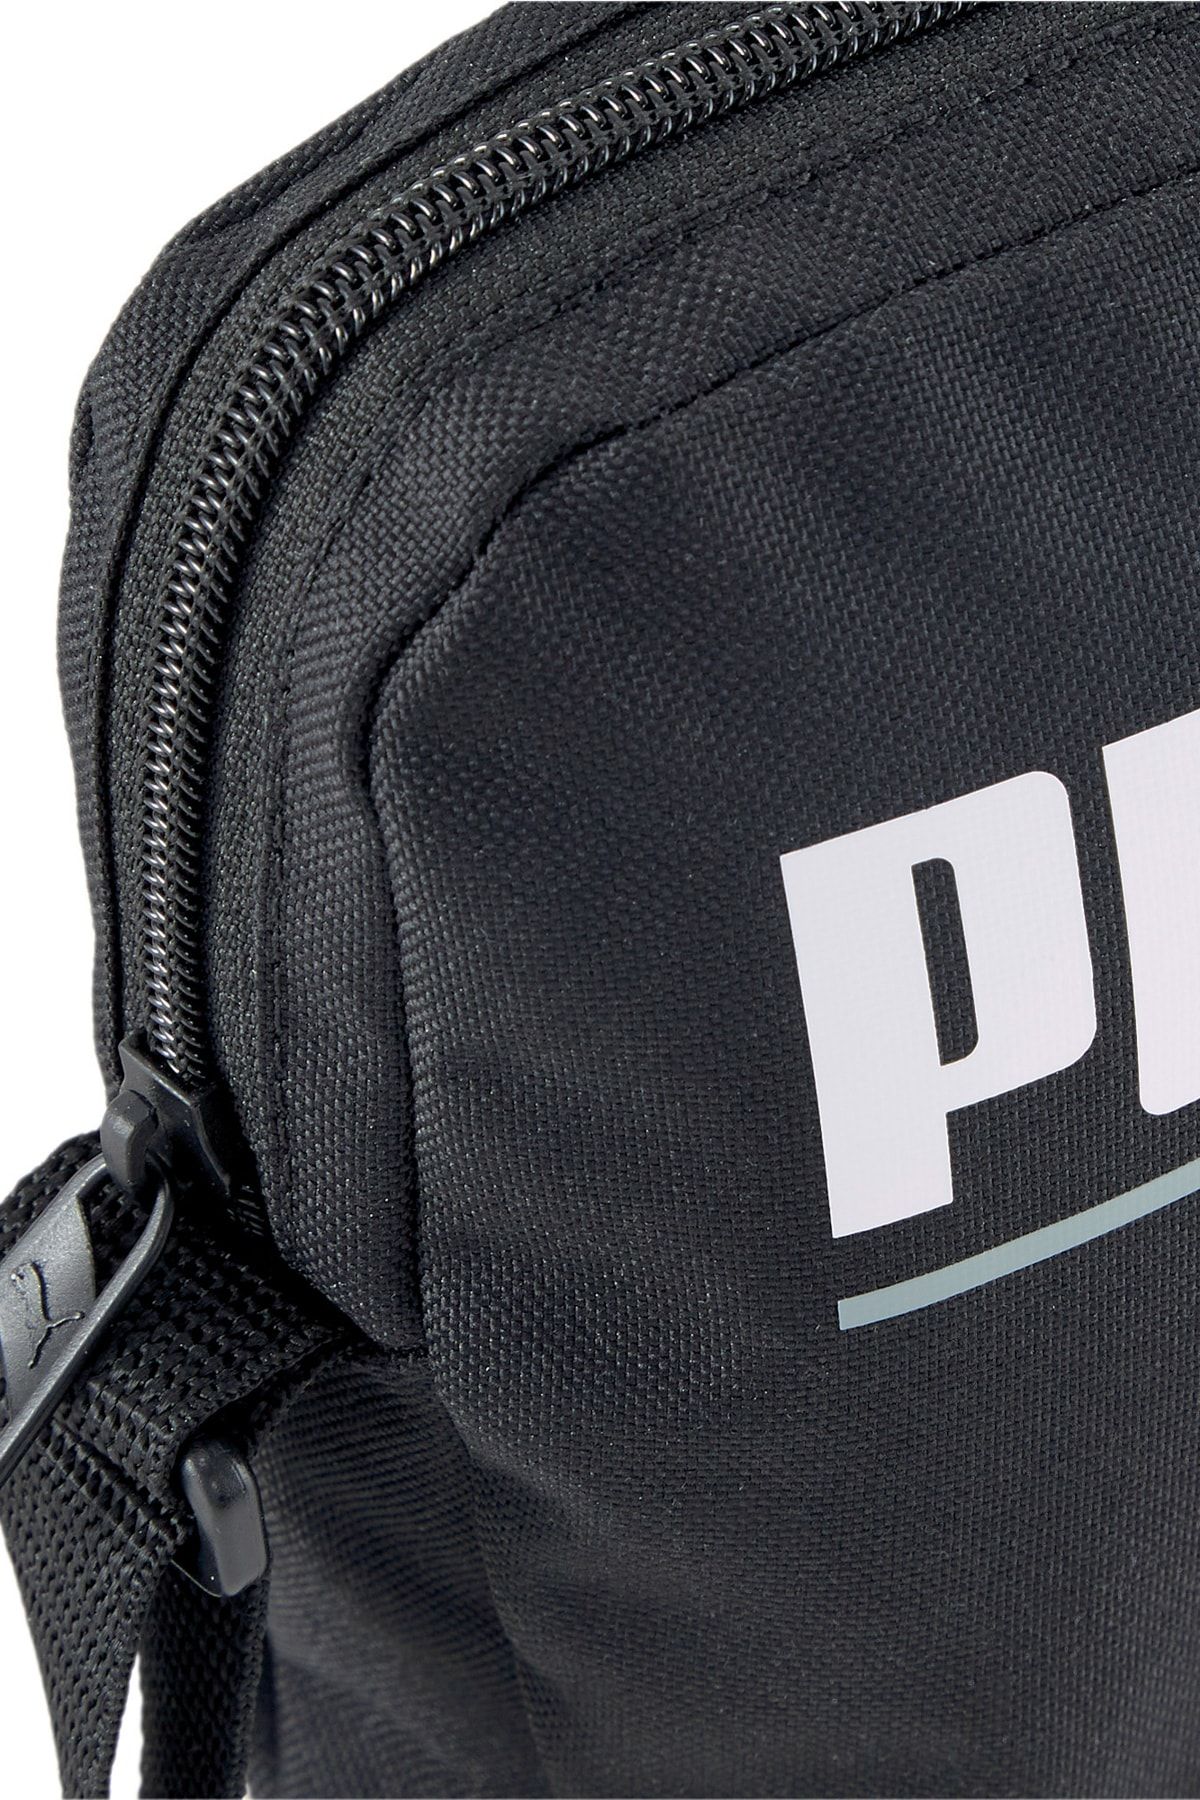 Puma به علاوه کیسه قابل حمل - کیف شانه سیاه